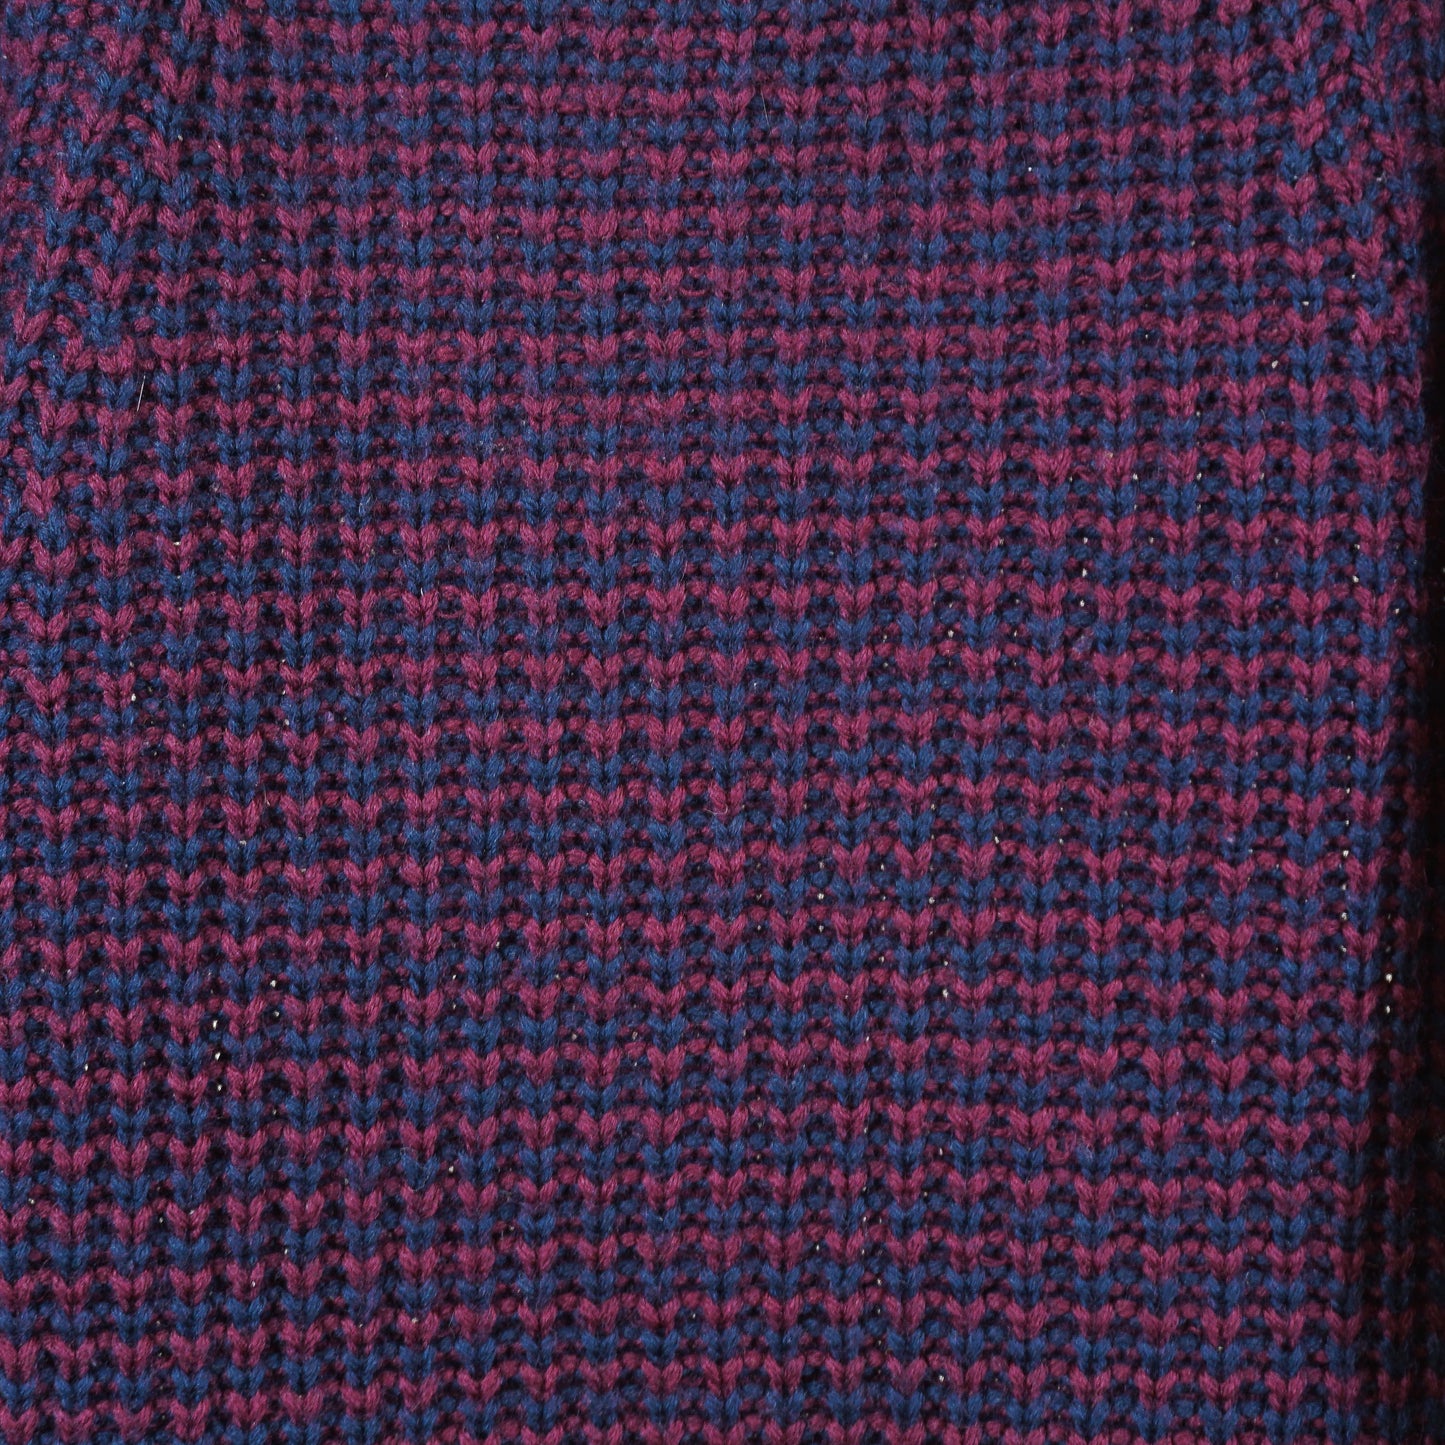 80s/90s Burgandy/Navy Knit V-Neck Sweater (XL)